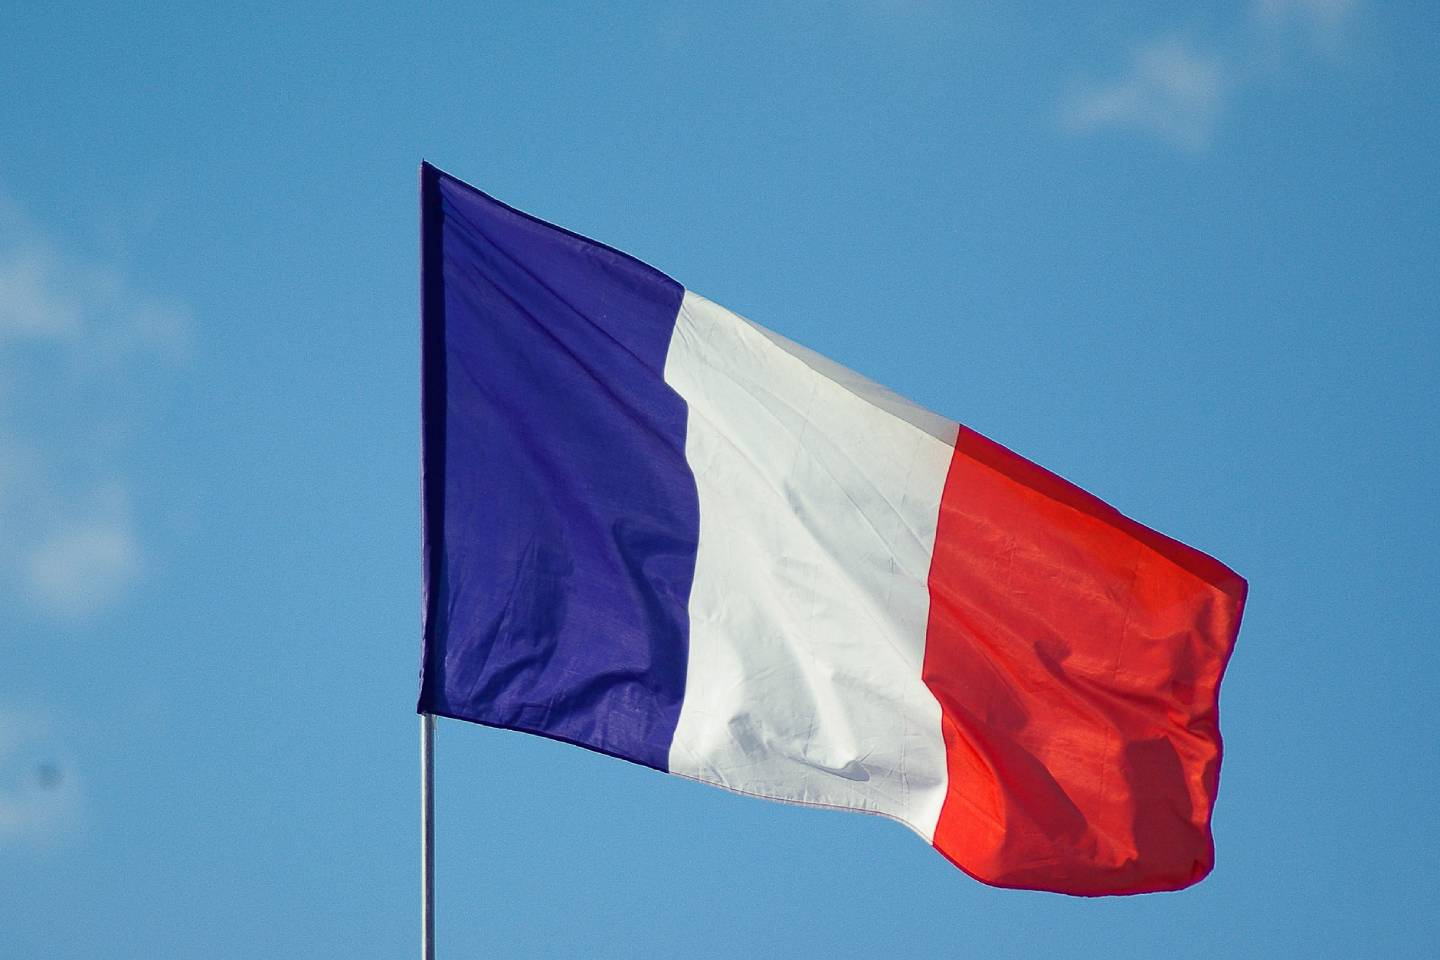 Новости мира / Политика в мире / Полиция Парижа запретила устраивать массовые собрания на площади Согласия